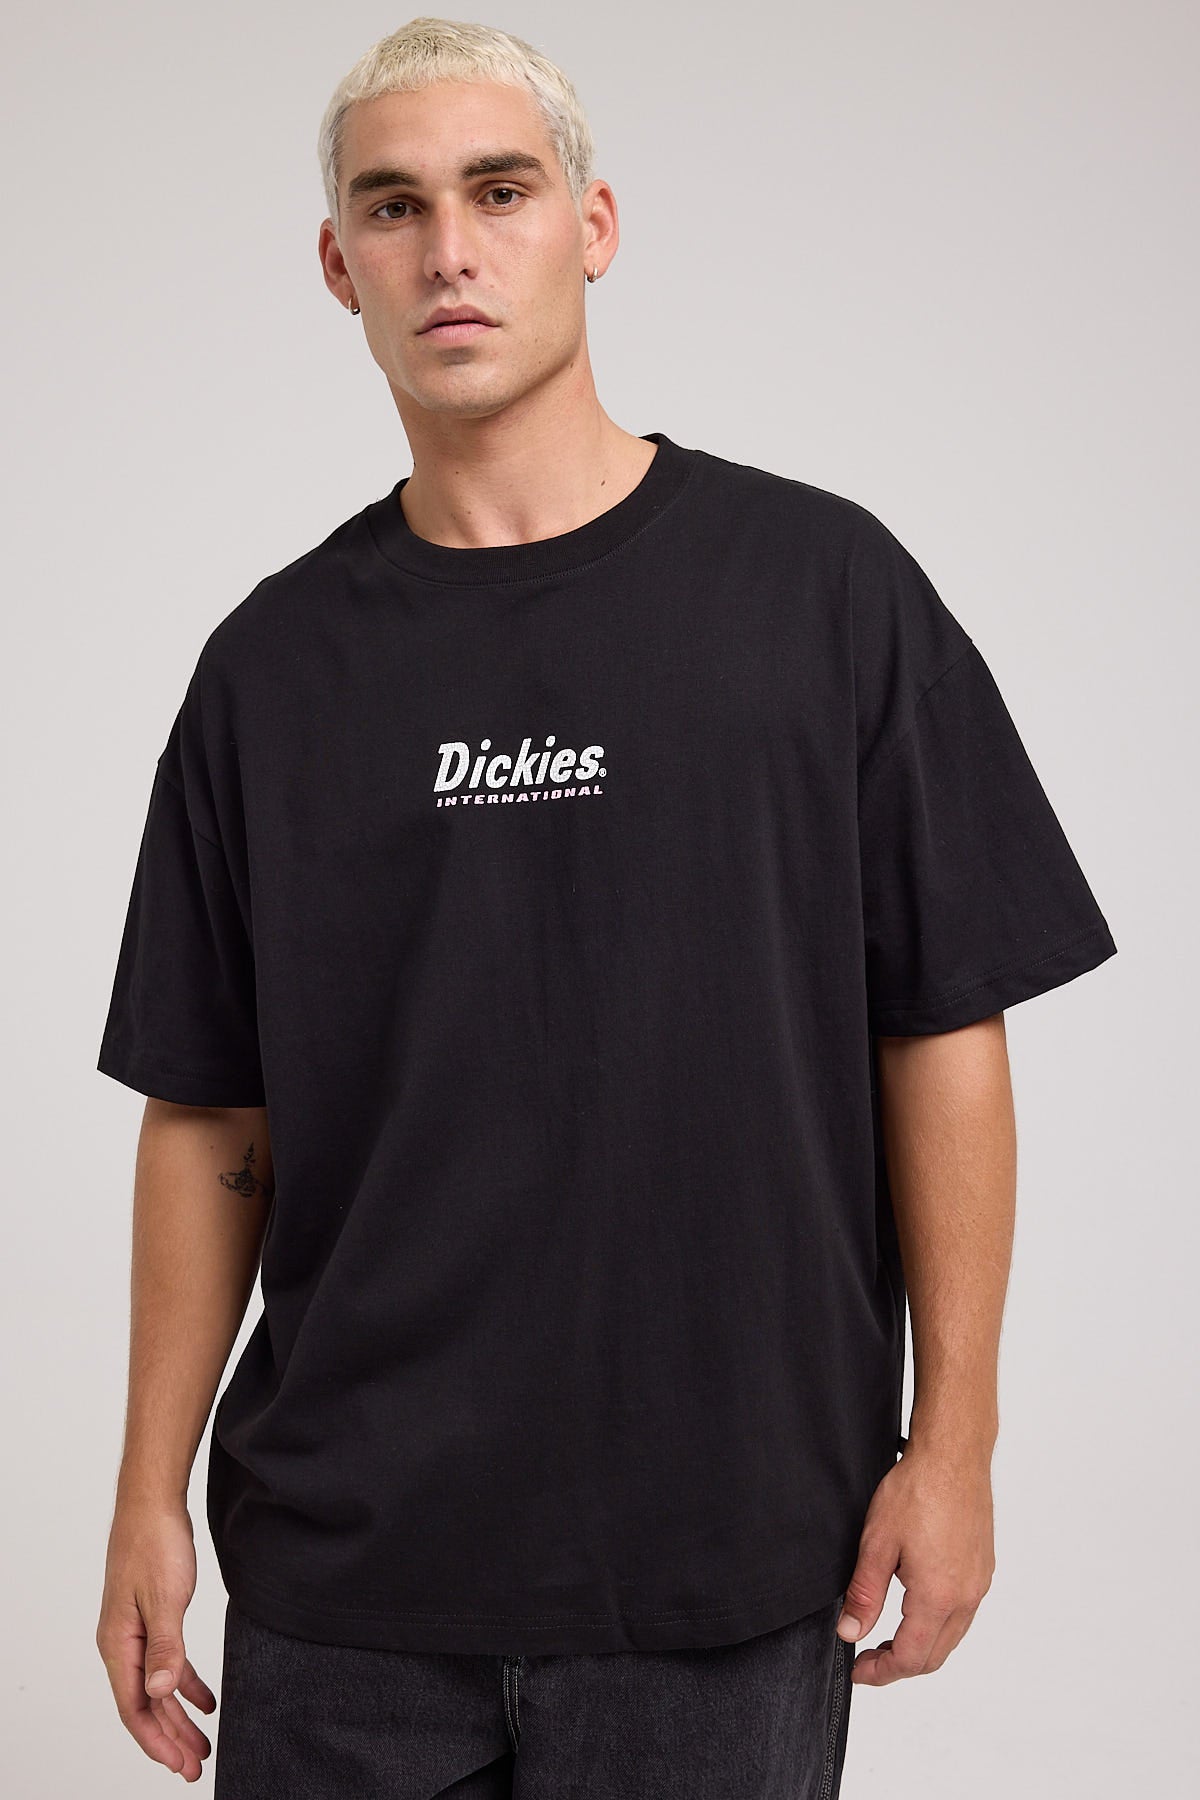 Dickies International 330 Fit Tee Black